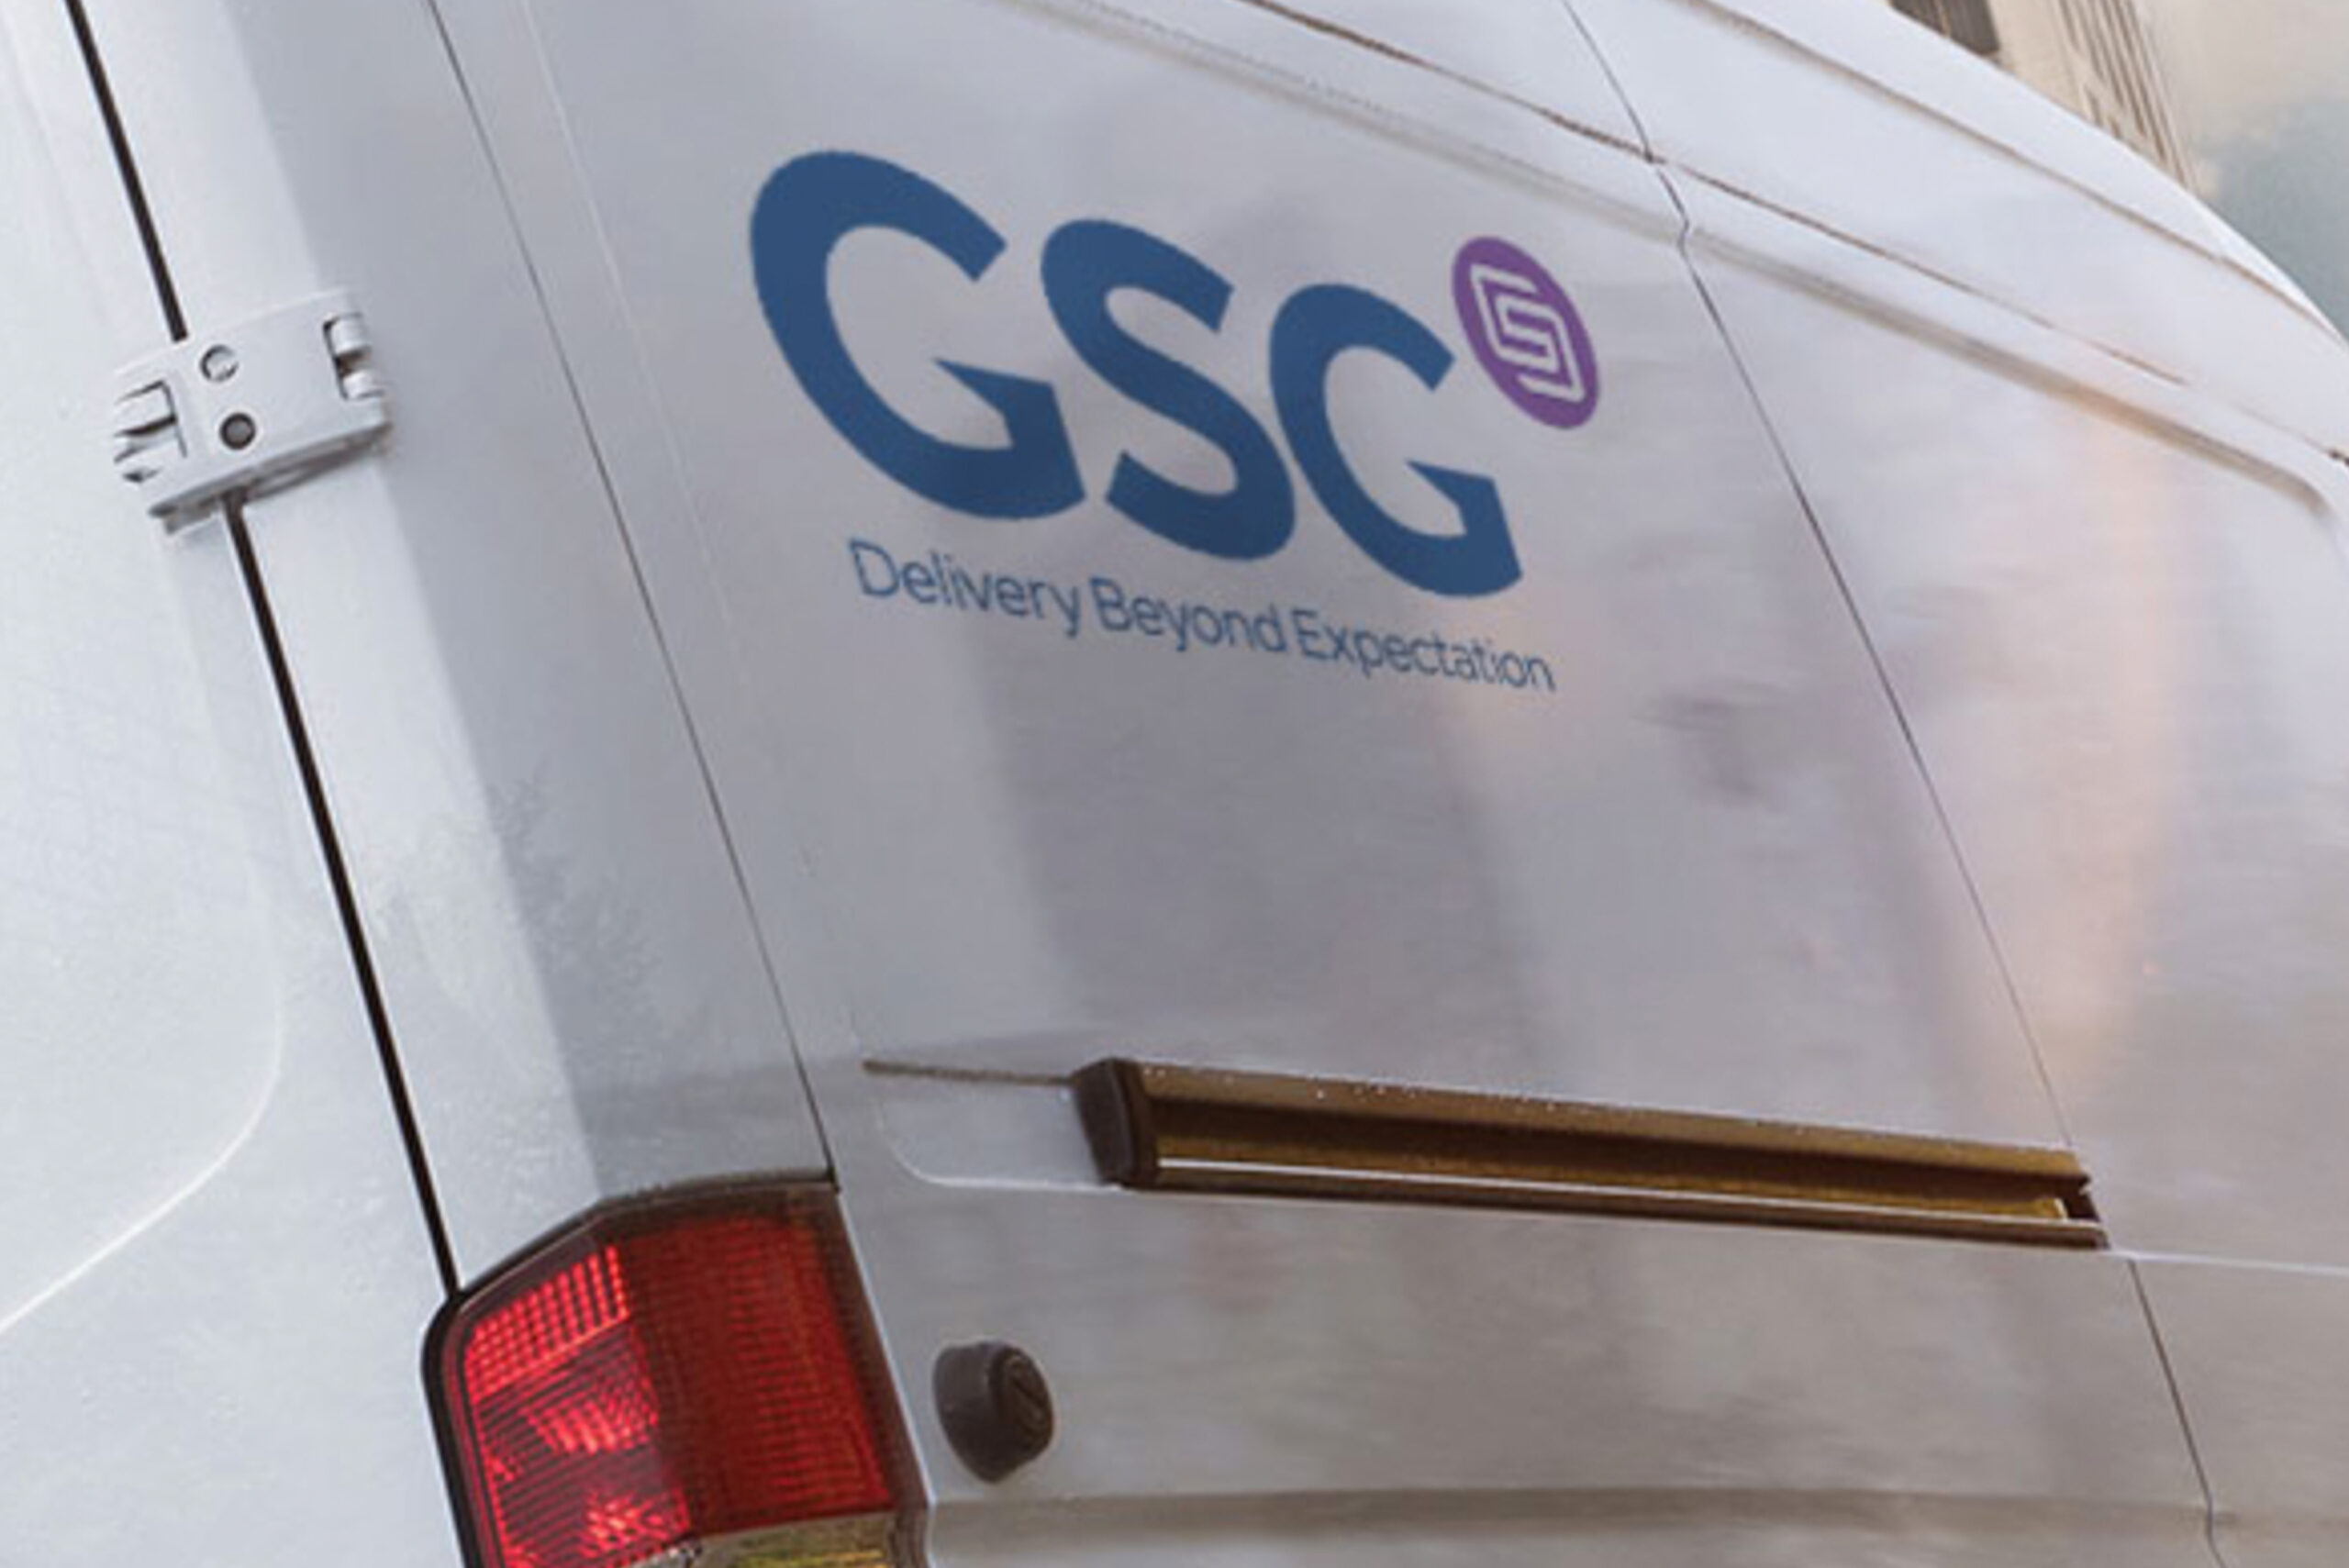 Back of a GSG van